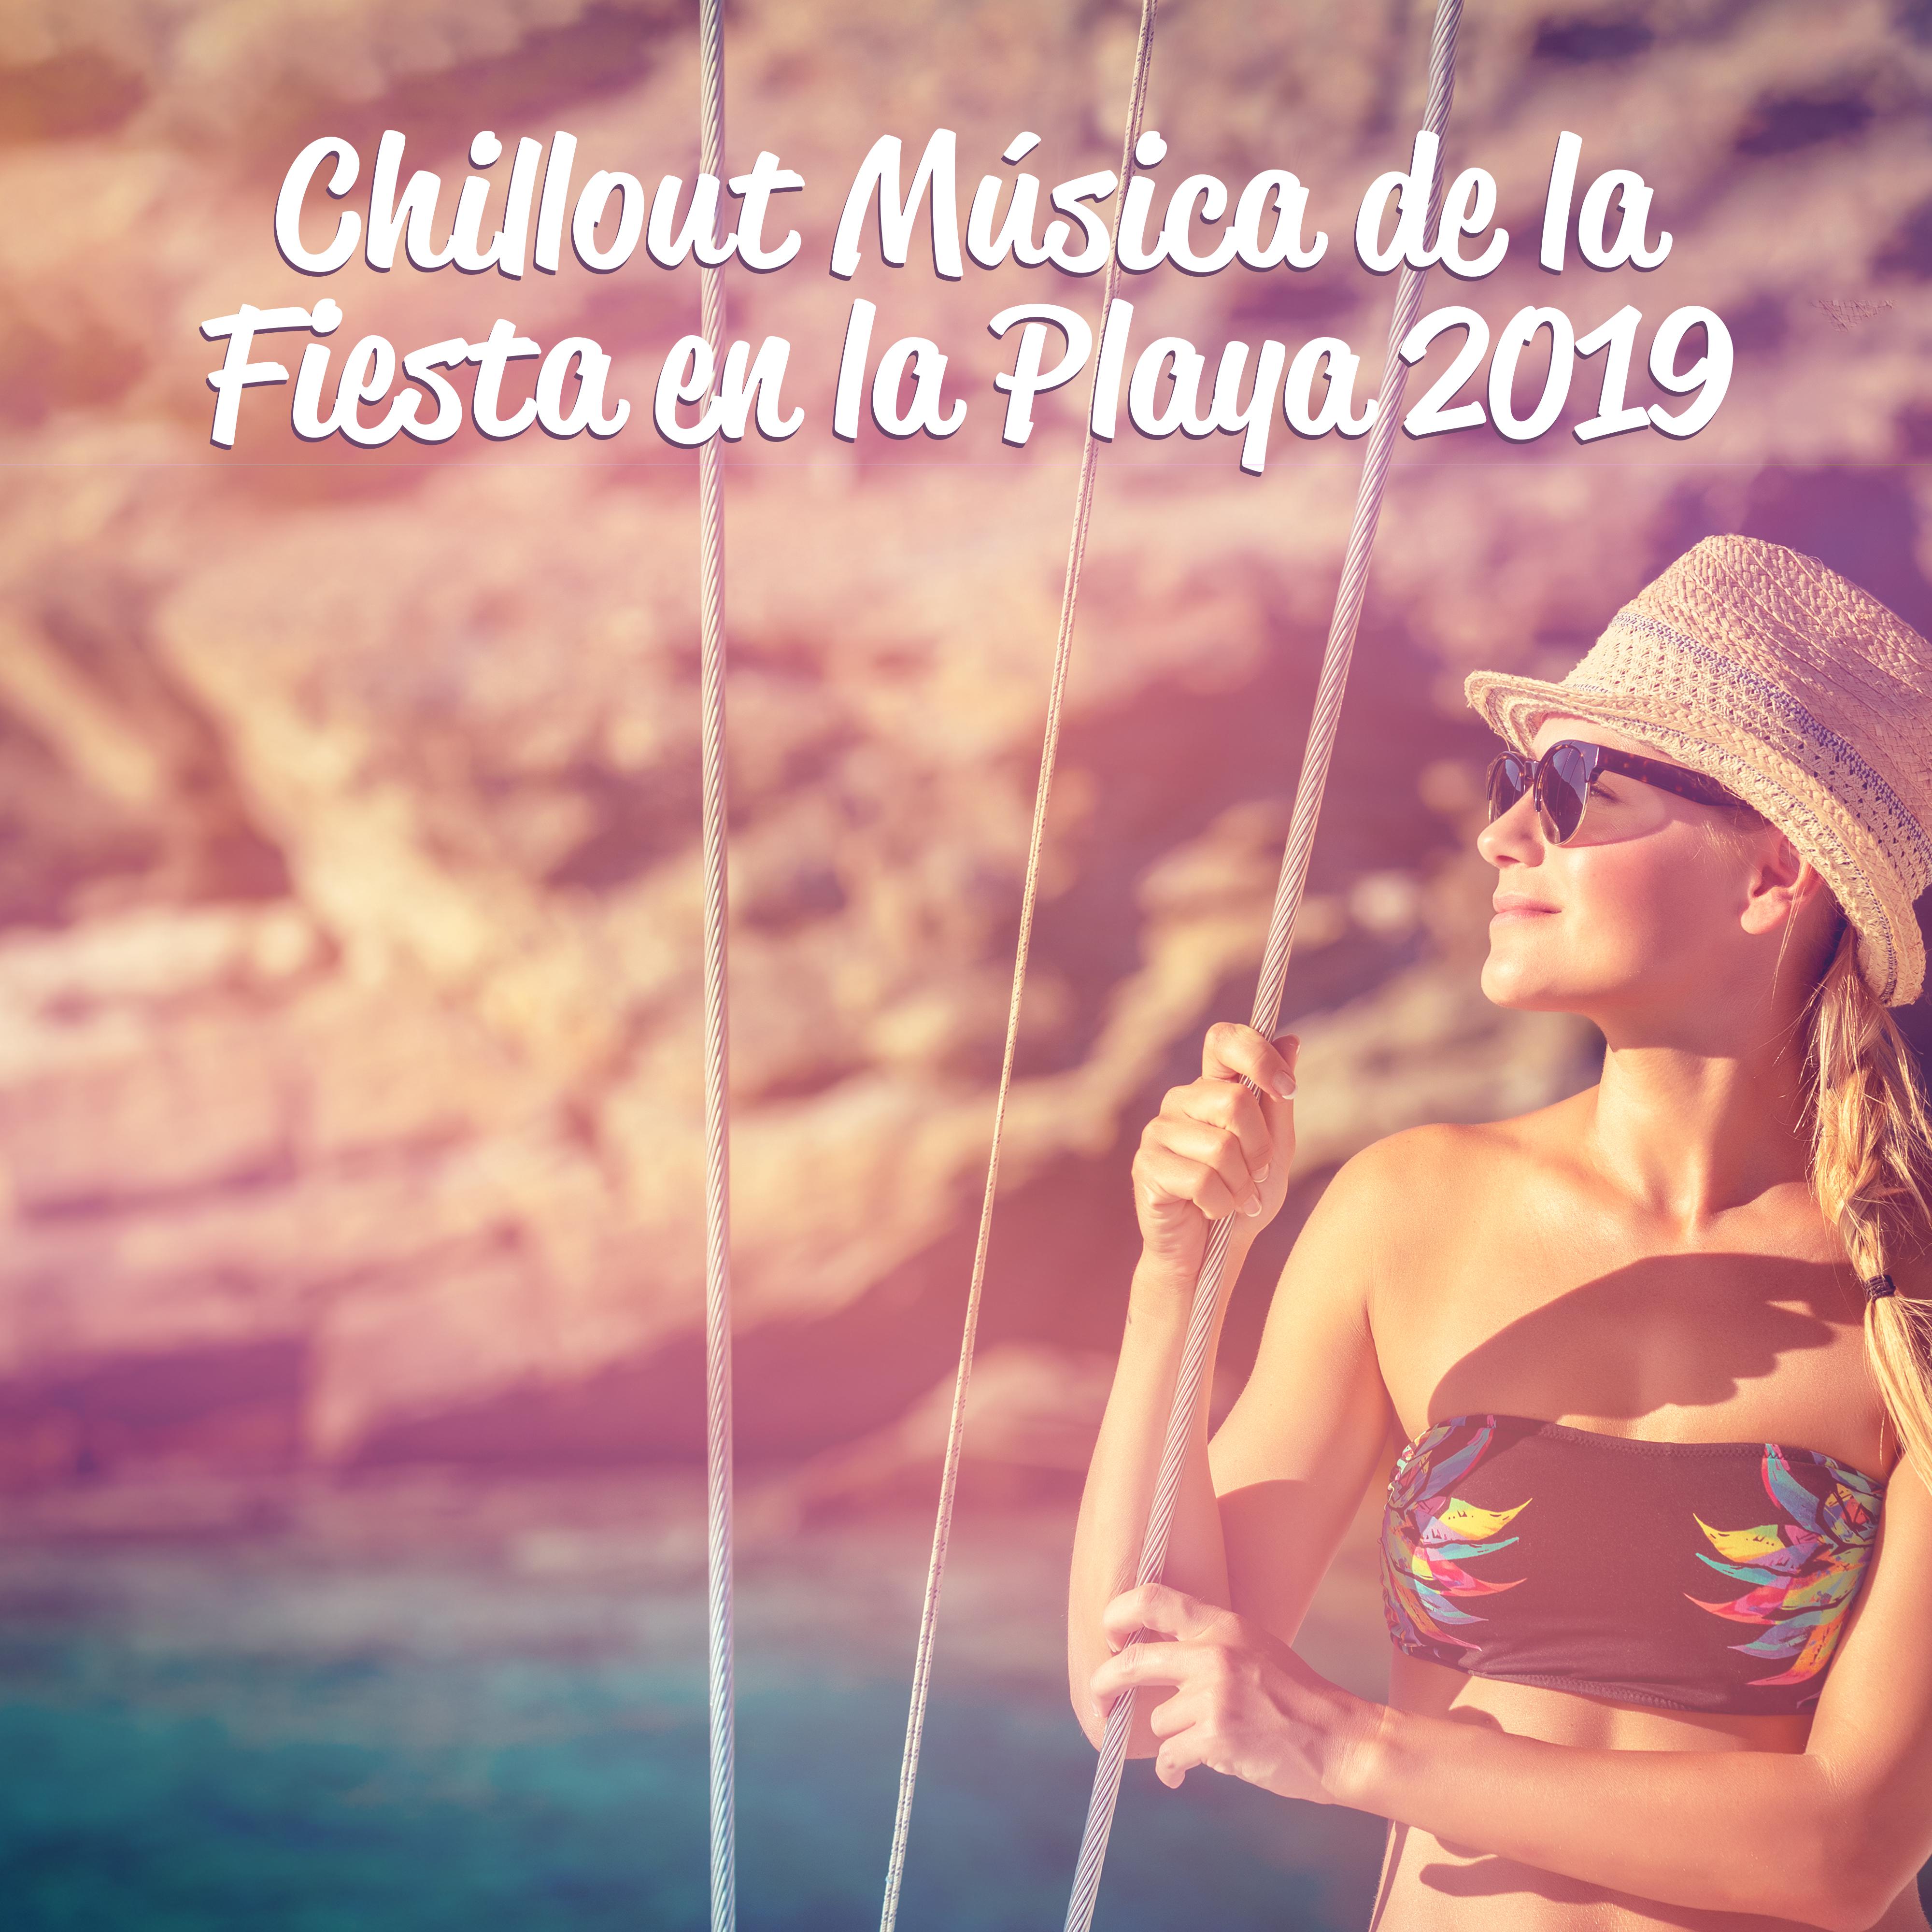 Chillout Música de la Fiesta en la Playa 2019